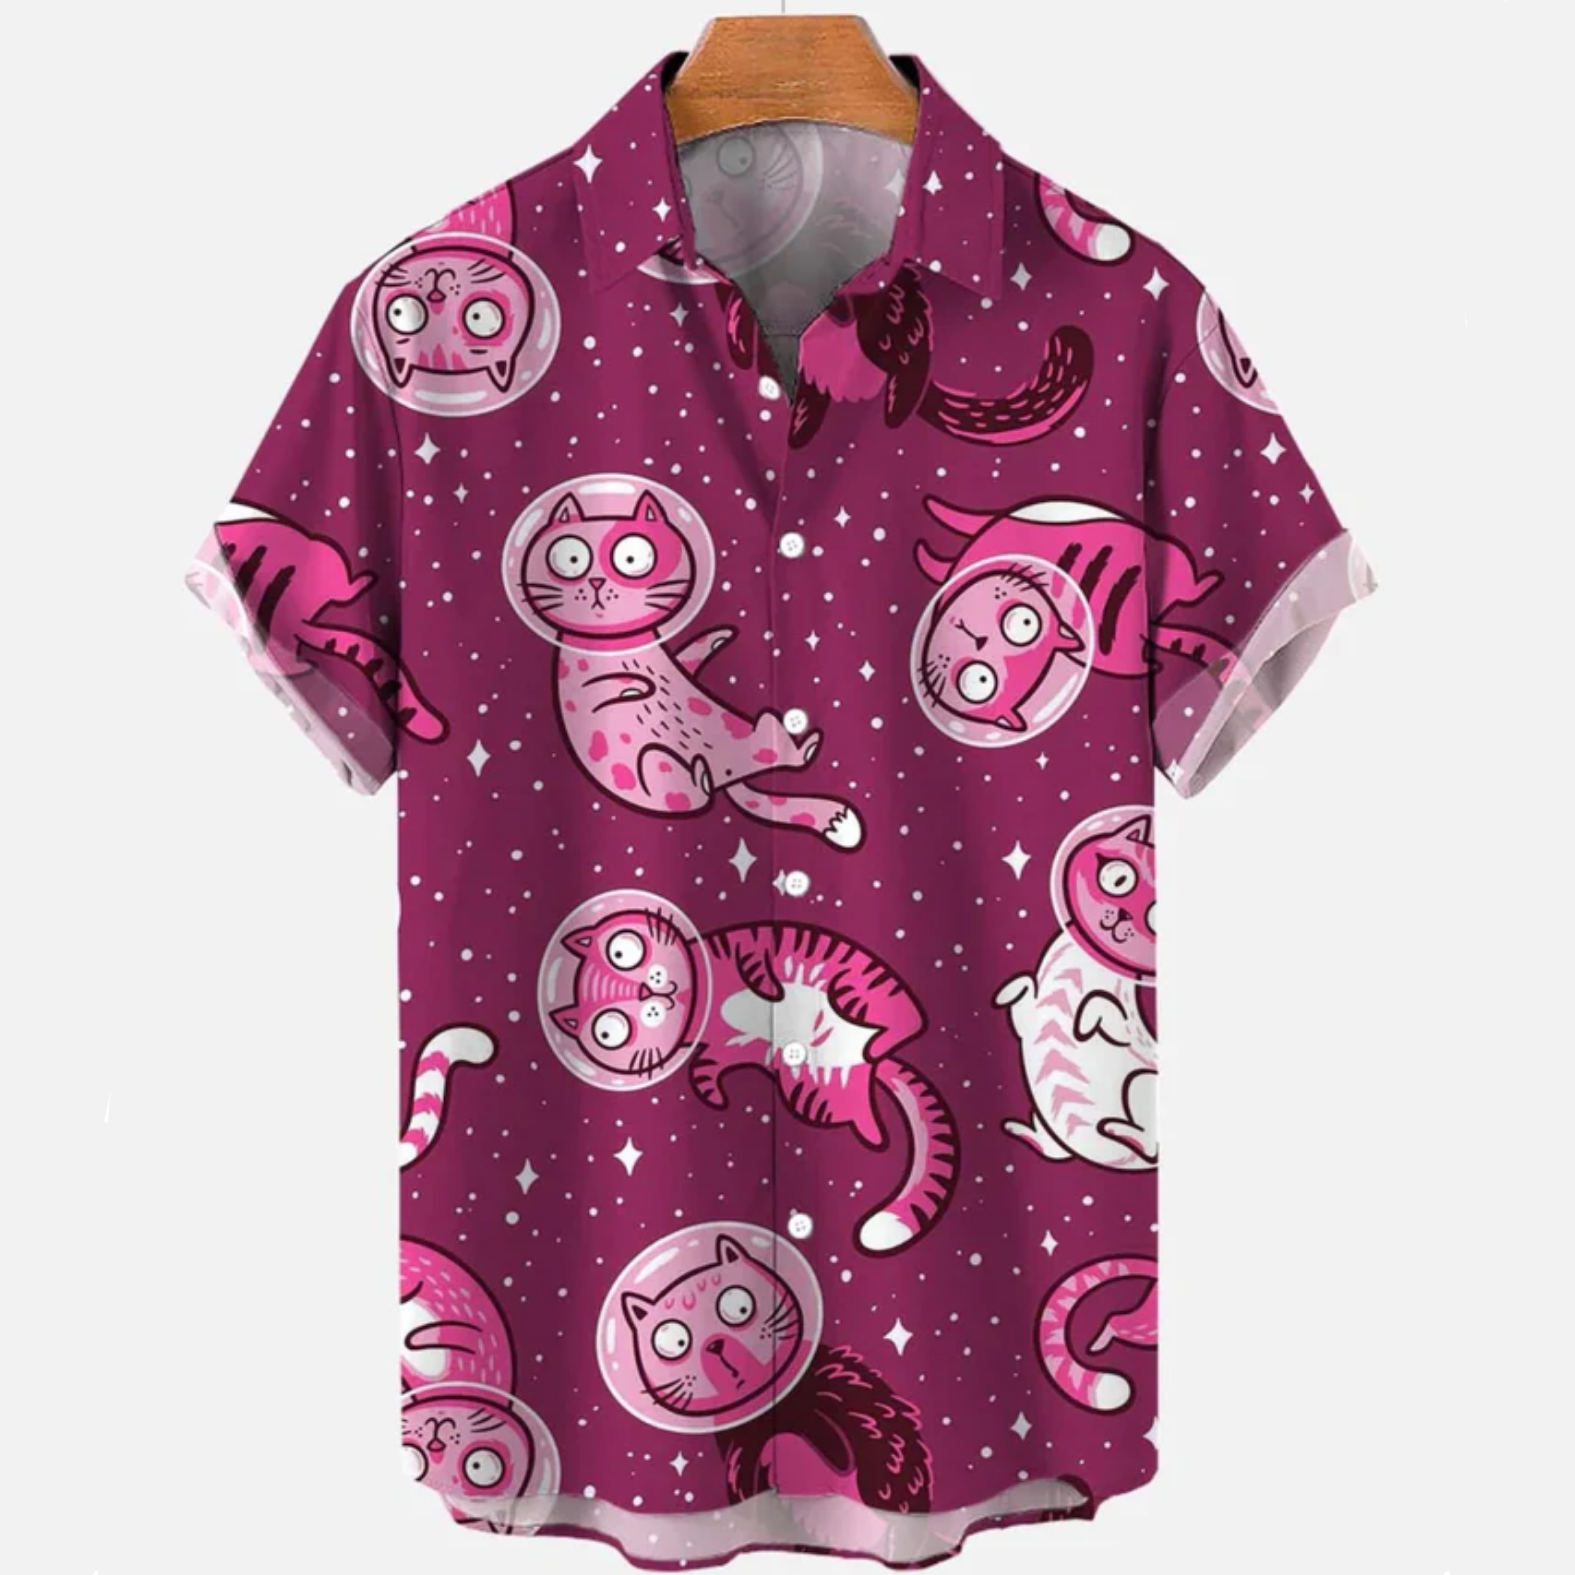 AstroKitty Shirt